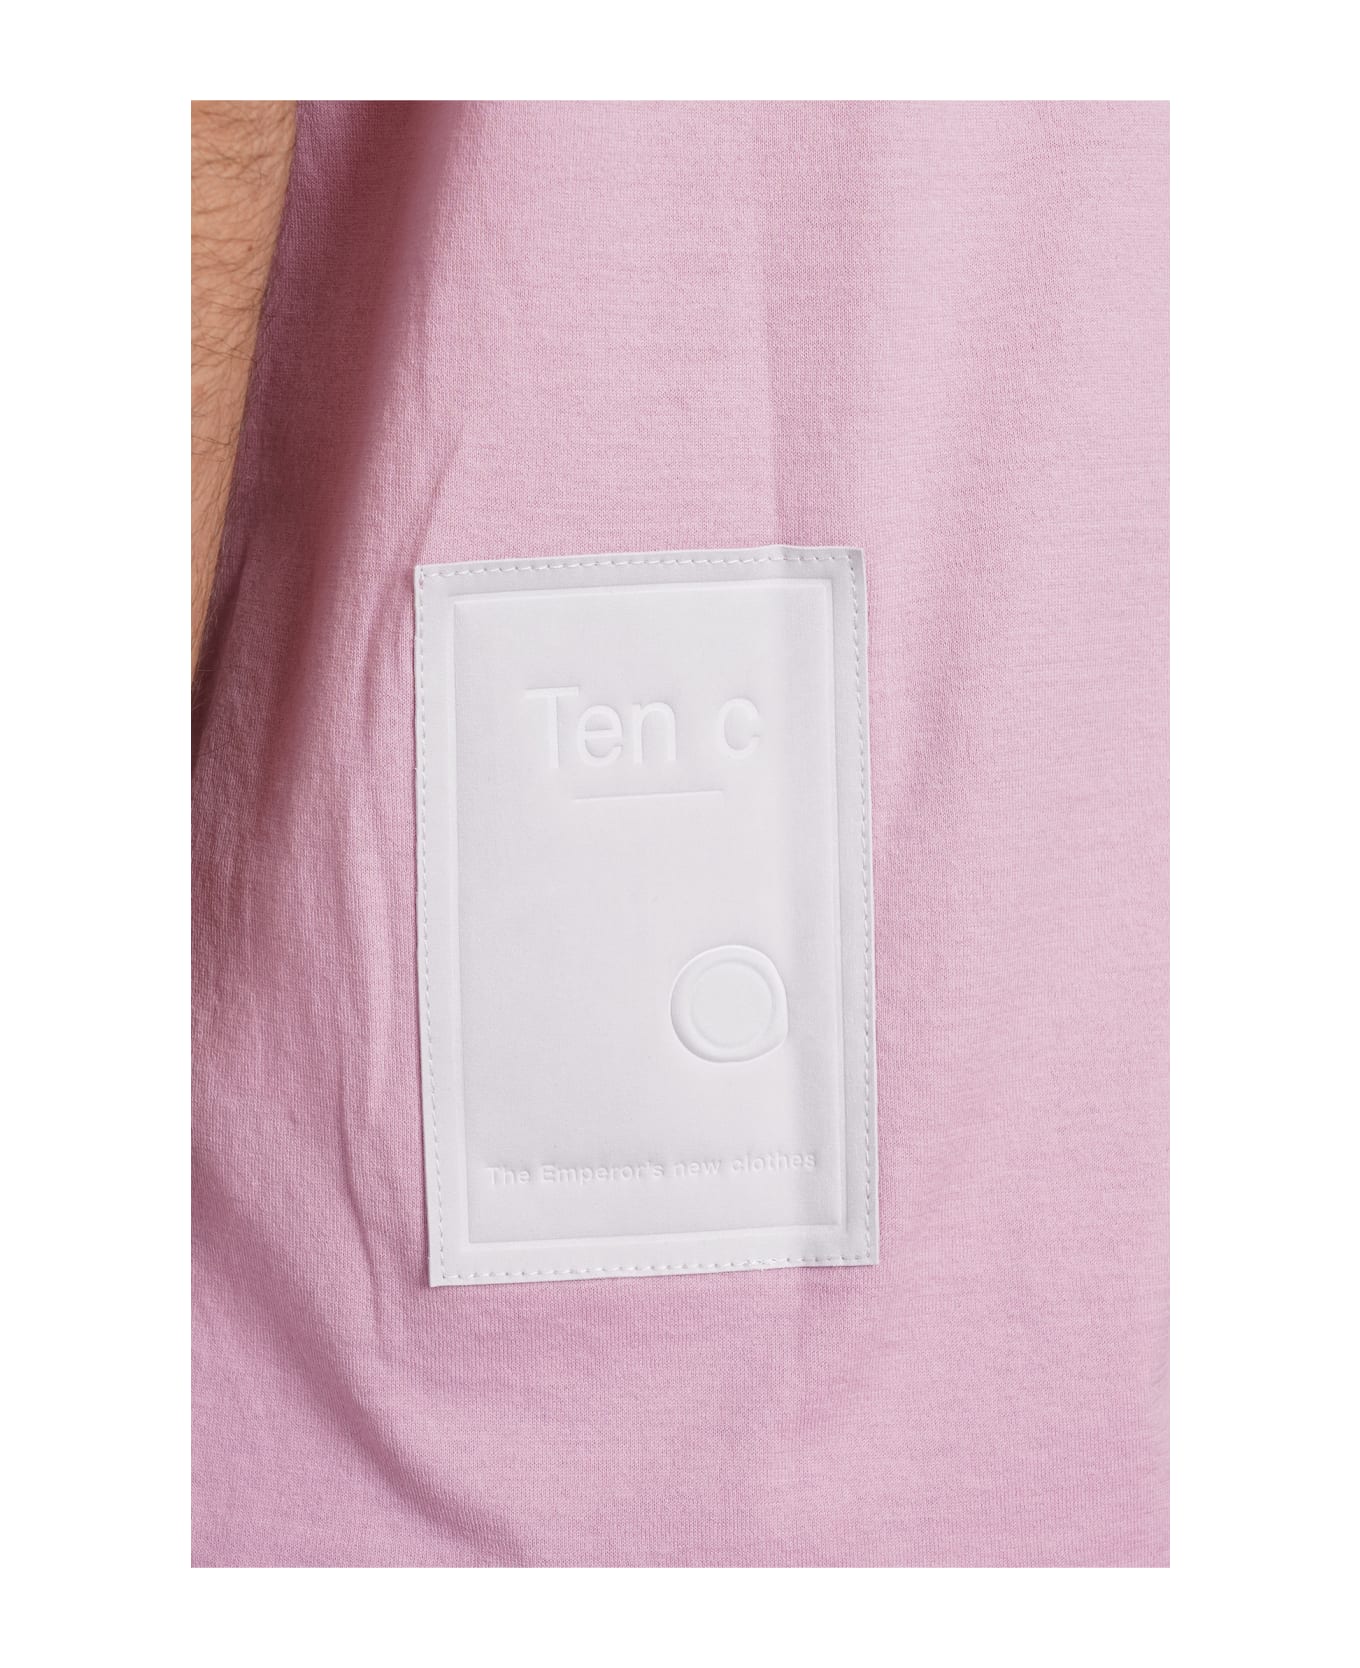 Ten C T-shirt In Rose-pink Cotton - rose-pink